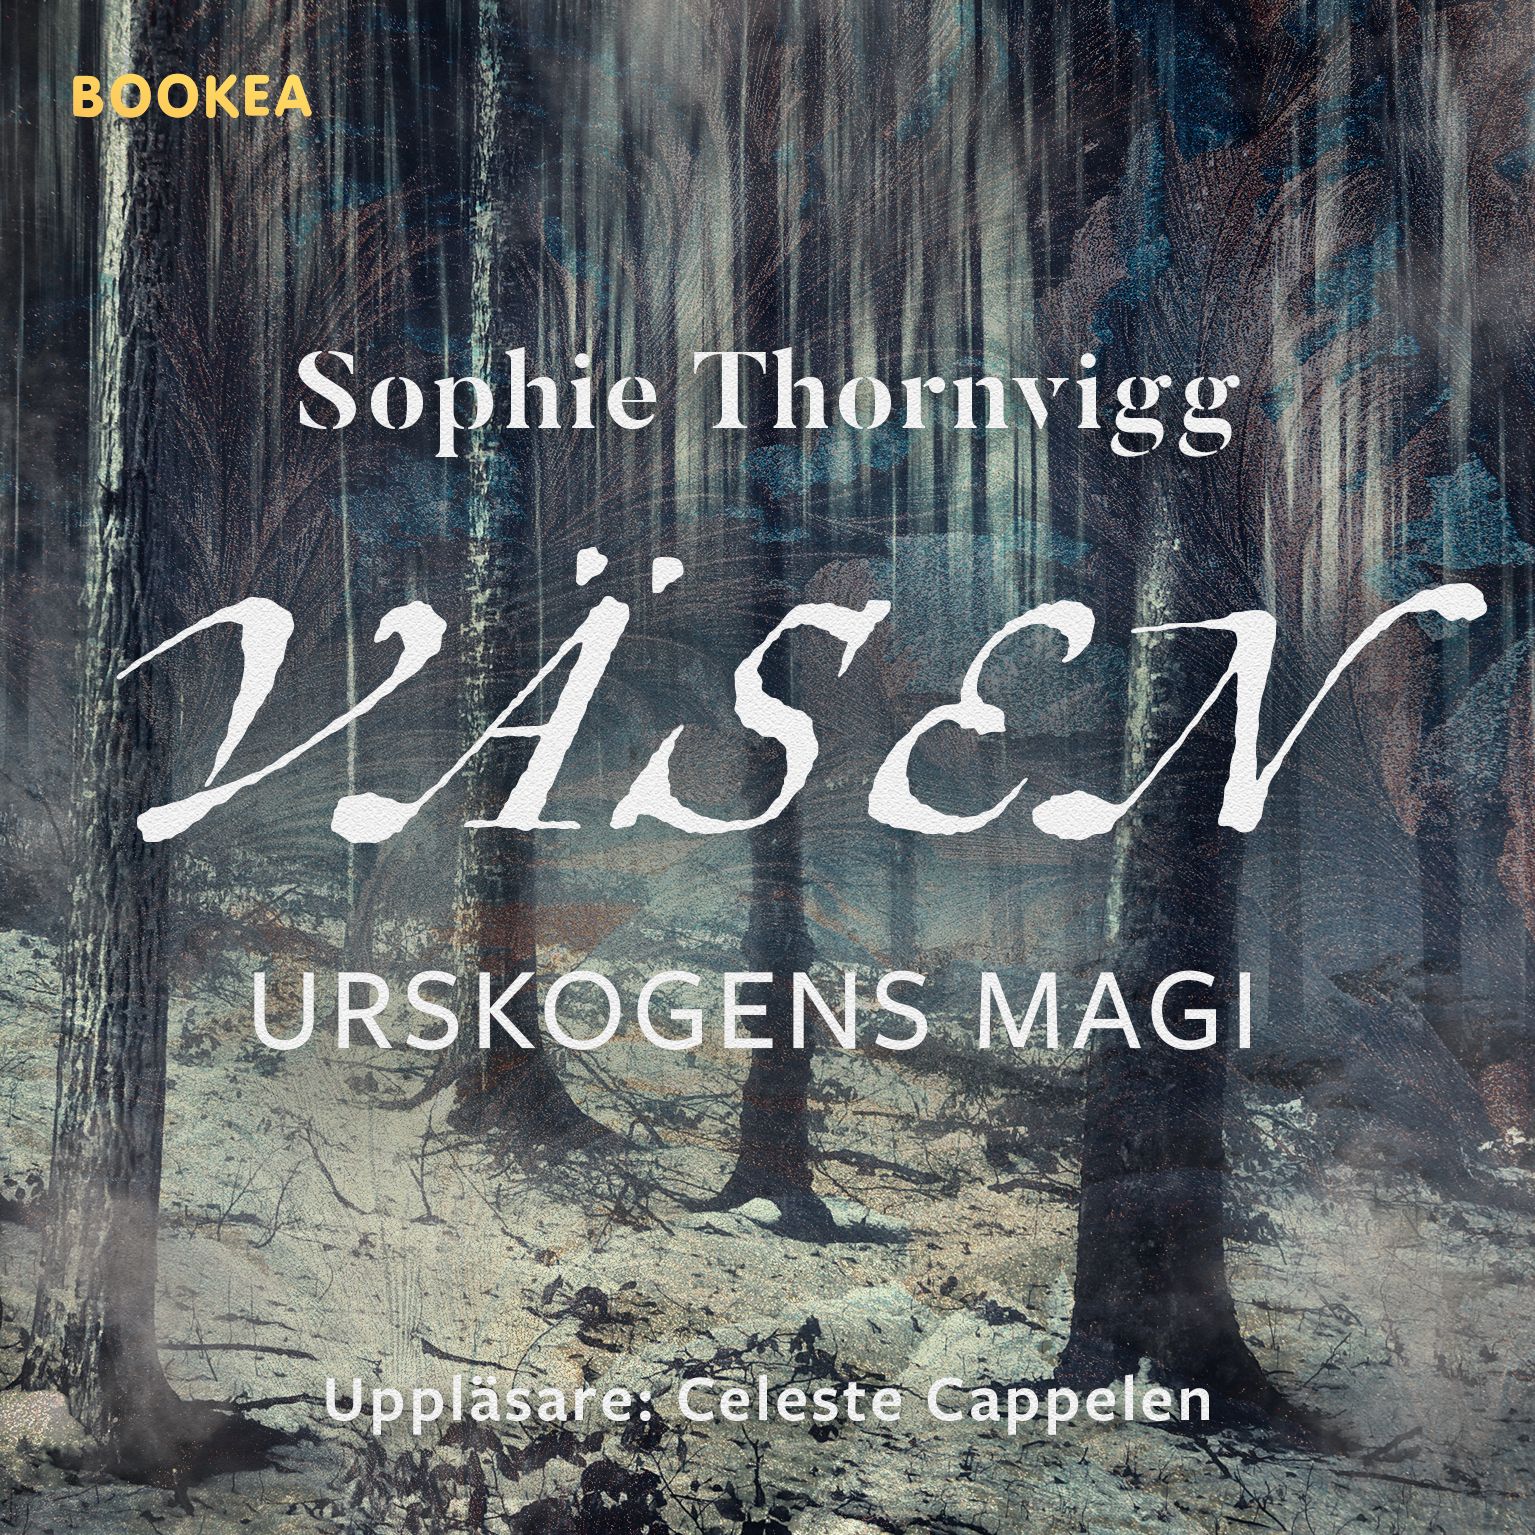 Väsen, ljudbok av Sophie Thornvigg